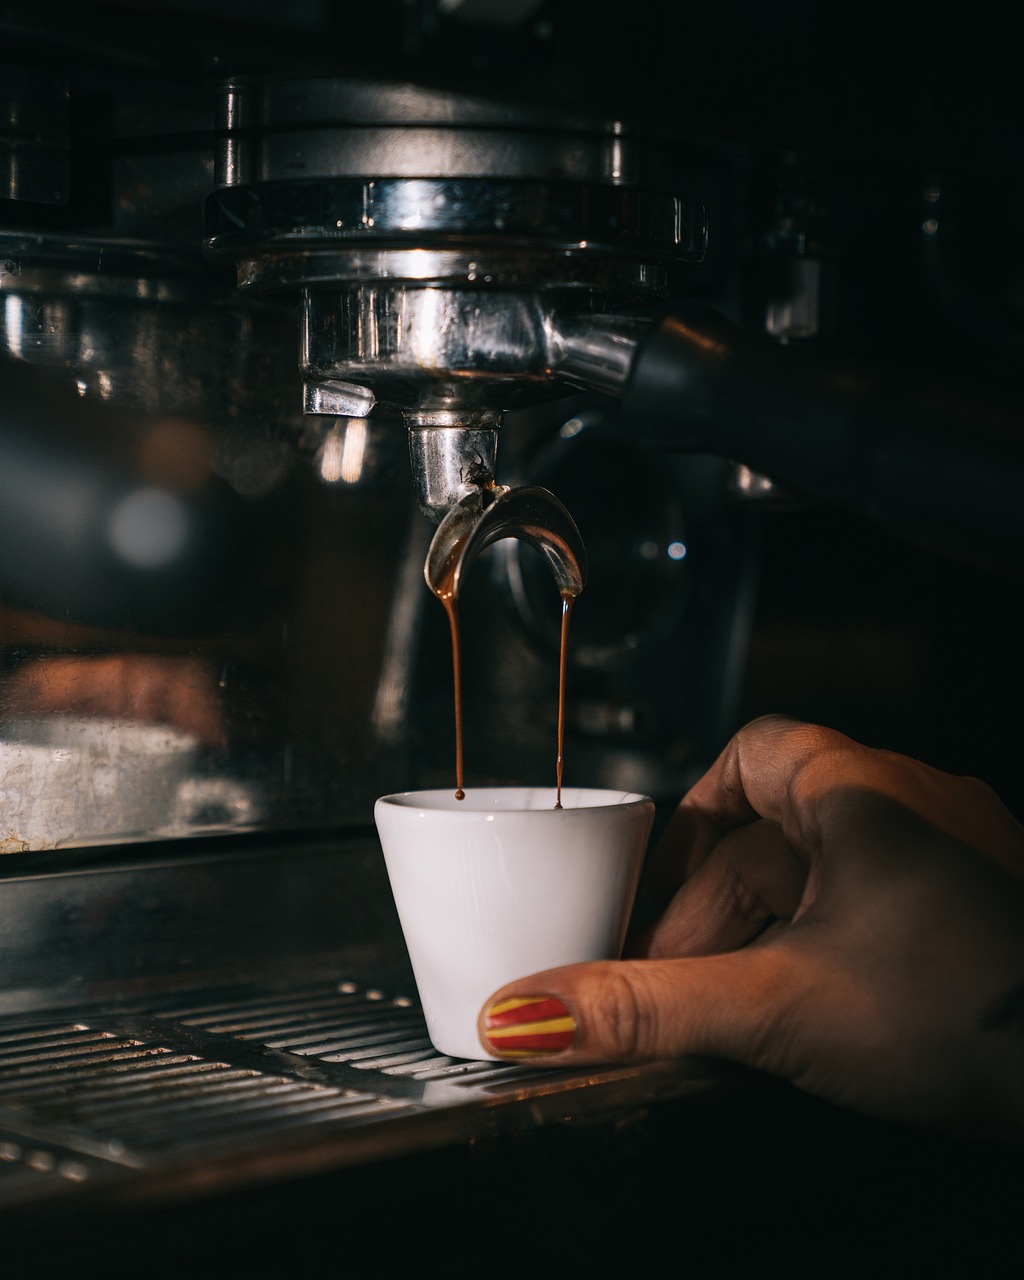 Serwis ekspresów – szybka i profesjonalna naprawa Twojego ulubionego ekspresu do kawy